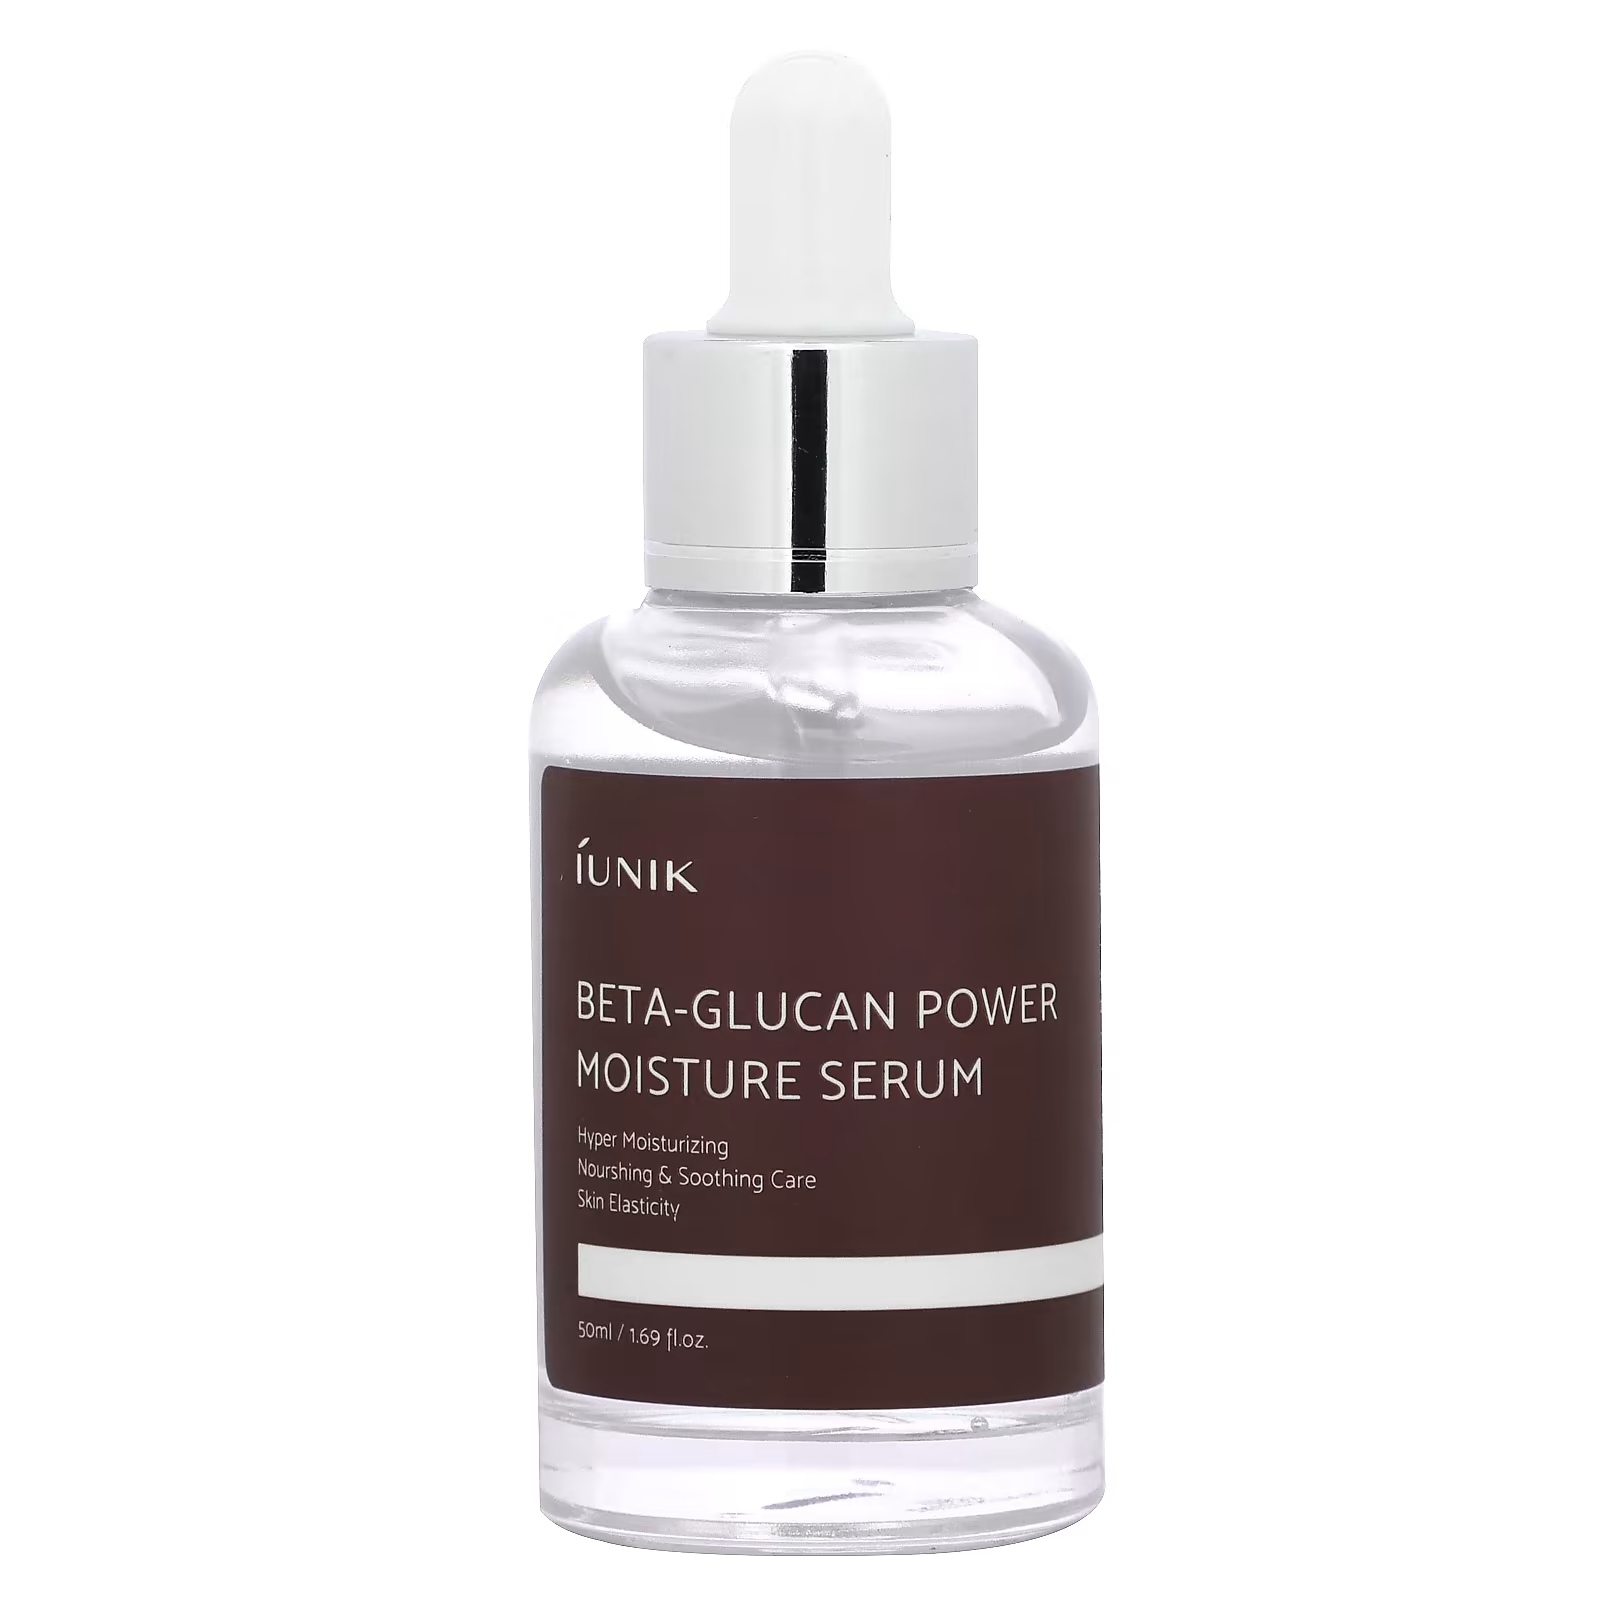 Сыворотка увлажняющая iUNIK Beta-Glucan Power, 50 мл набор для лица iunik beta glucan edition skin care set